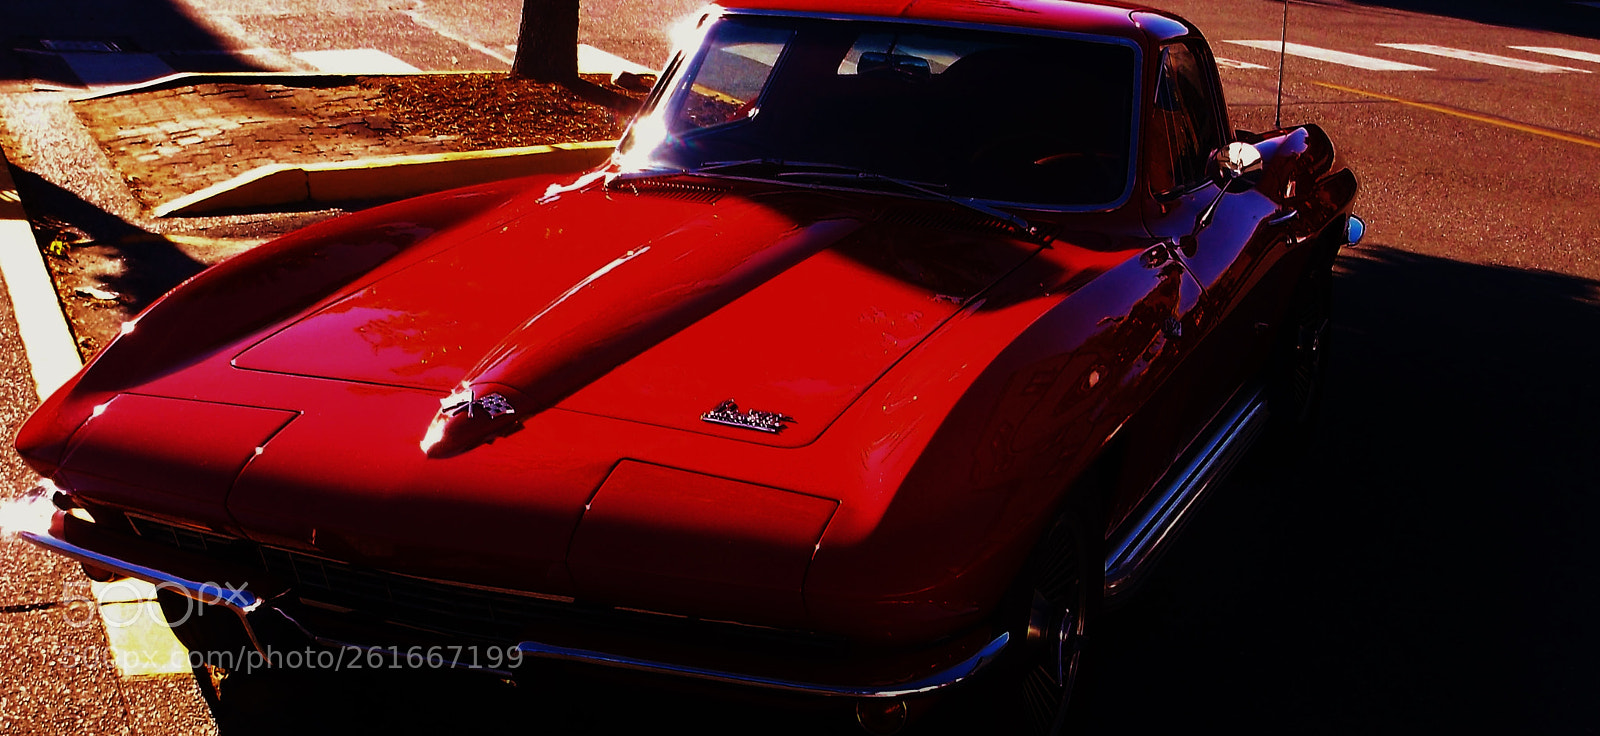 Fujifilm FinePix AX660 sample photo. Corvette red photography